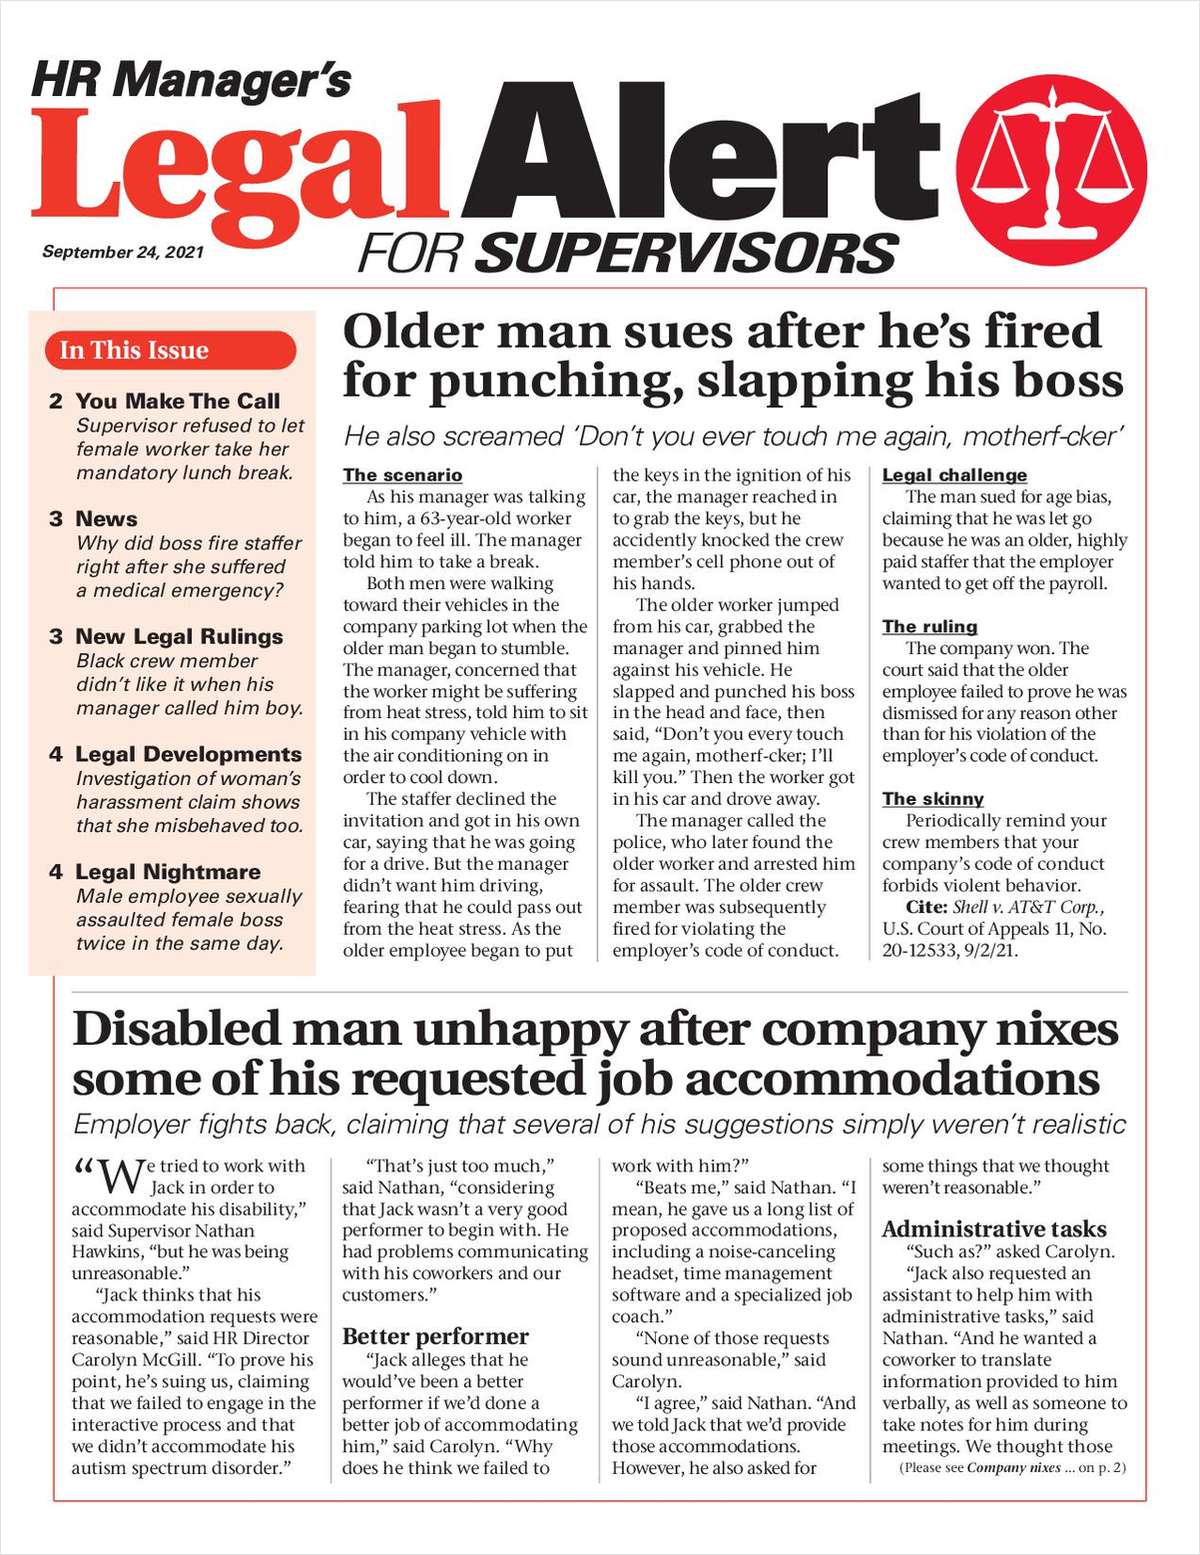 HR Manager's Legal Alert for Supervisors Newsletter: September 24 Edition